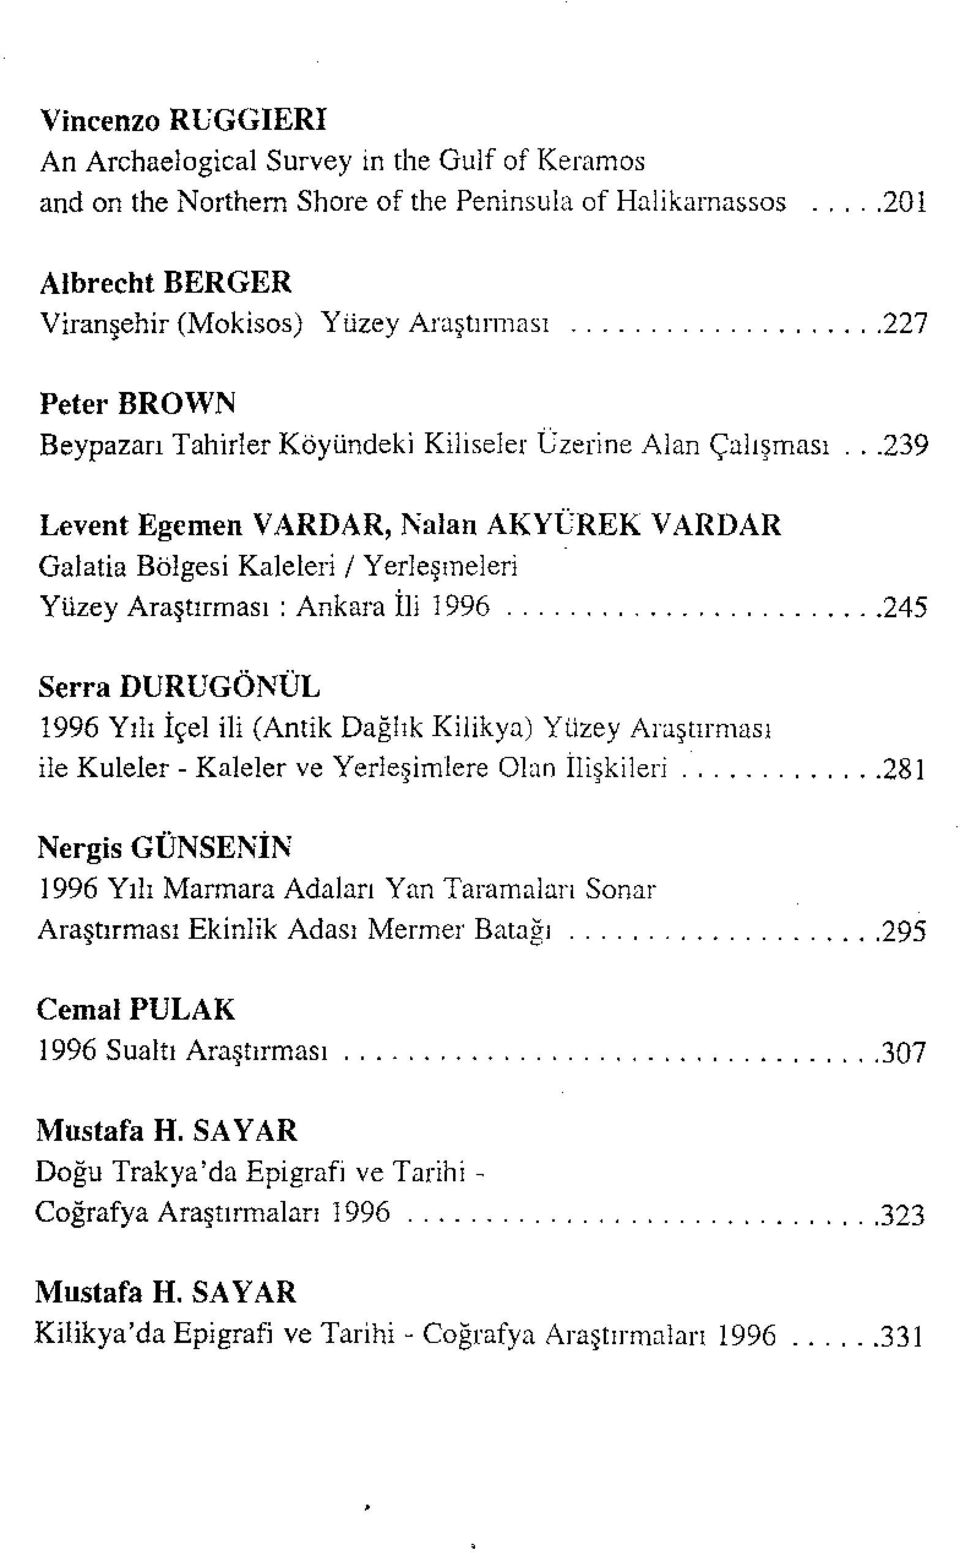 ..239 Levent Egemen VARDAR, Nalan AKYÜREK VARDAR Galatia Bölgesi Kaleleri / Yerleşmeleri Yüzey Araştırması : Ankara İli 1996 ".